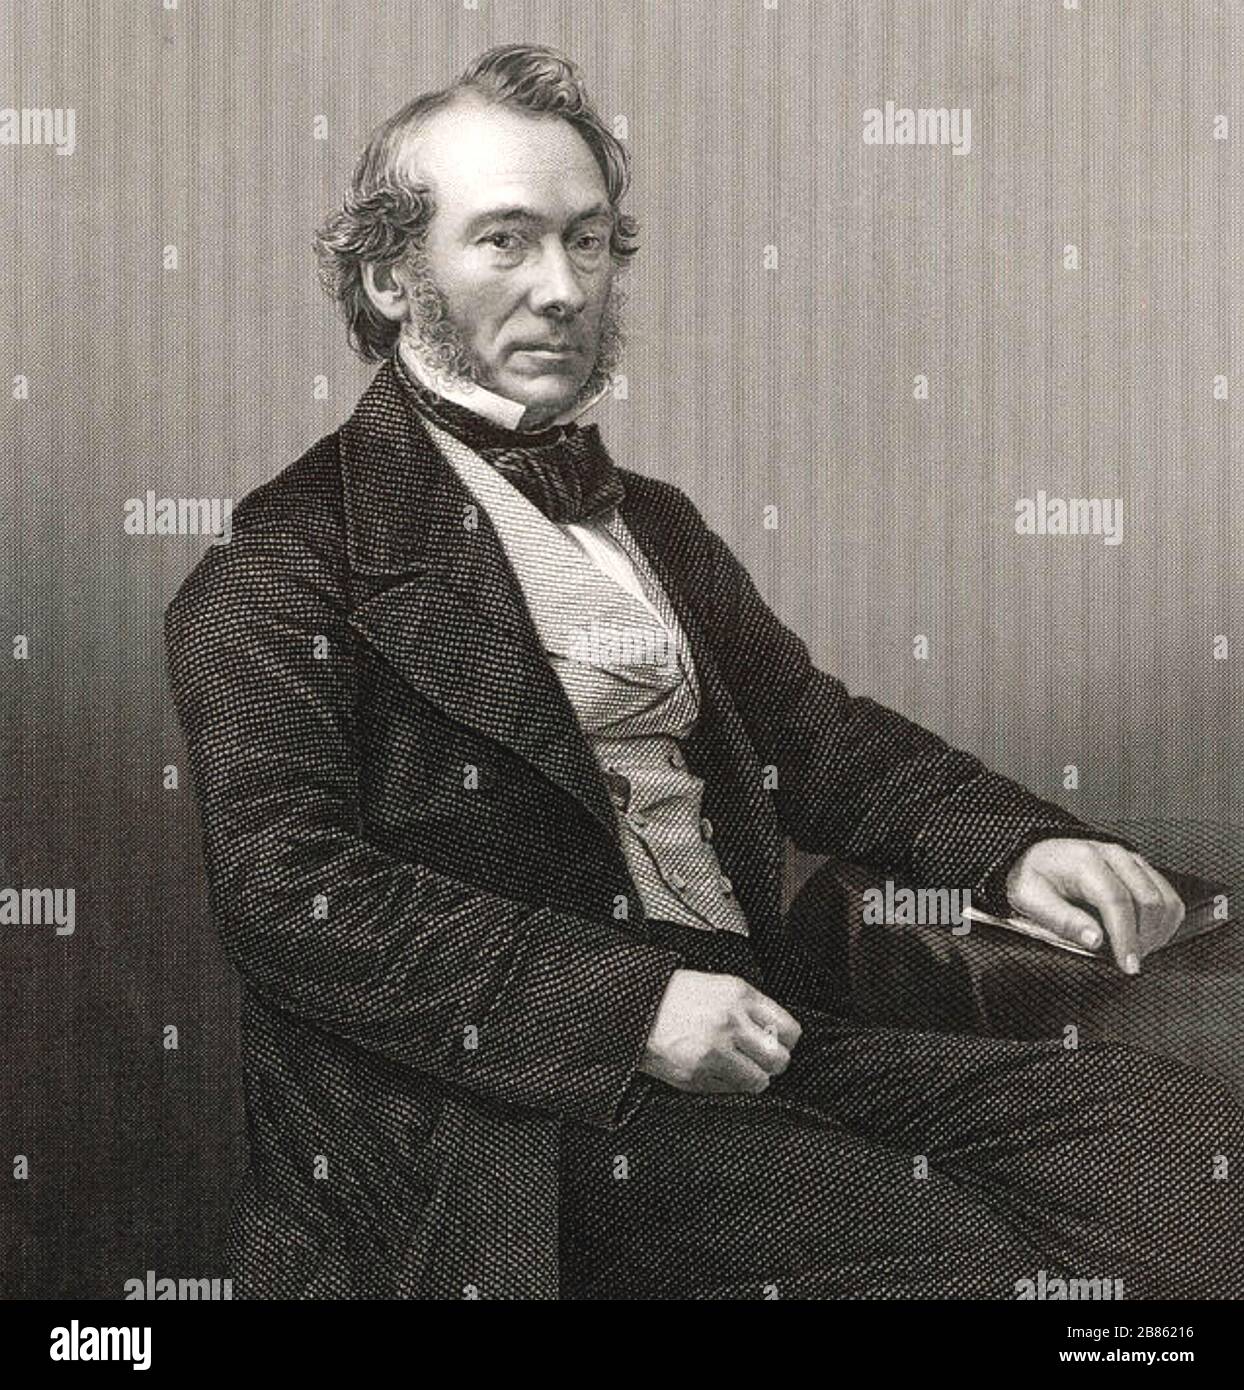 RICHARD COBDEN (1804-1865) fabbricante inglese, statista liberale e avvocato anti-legge Corn. Foto Stock